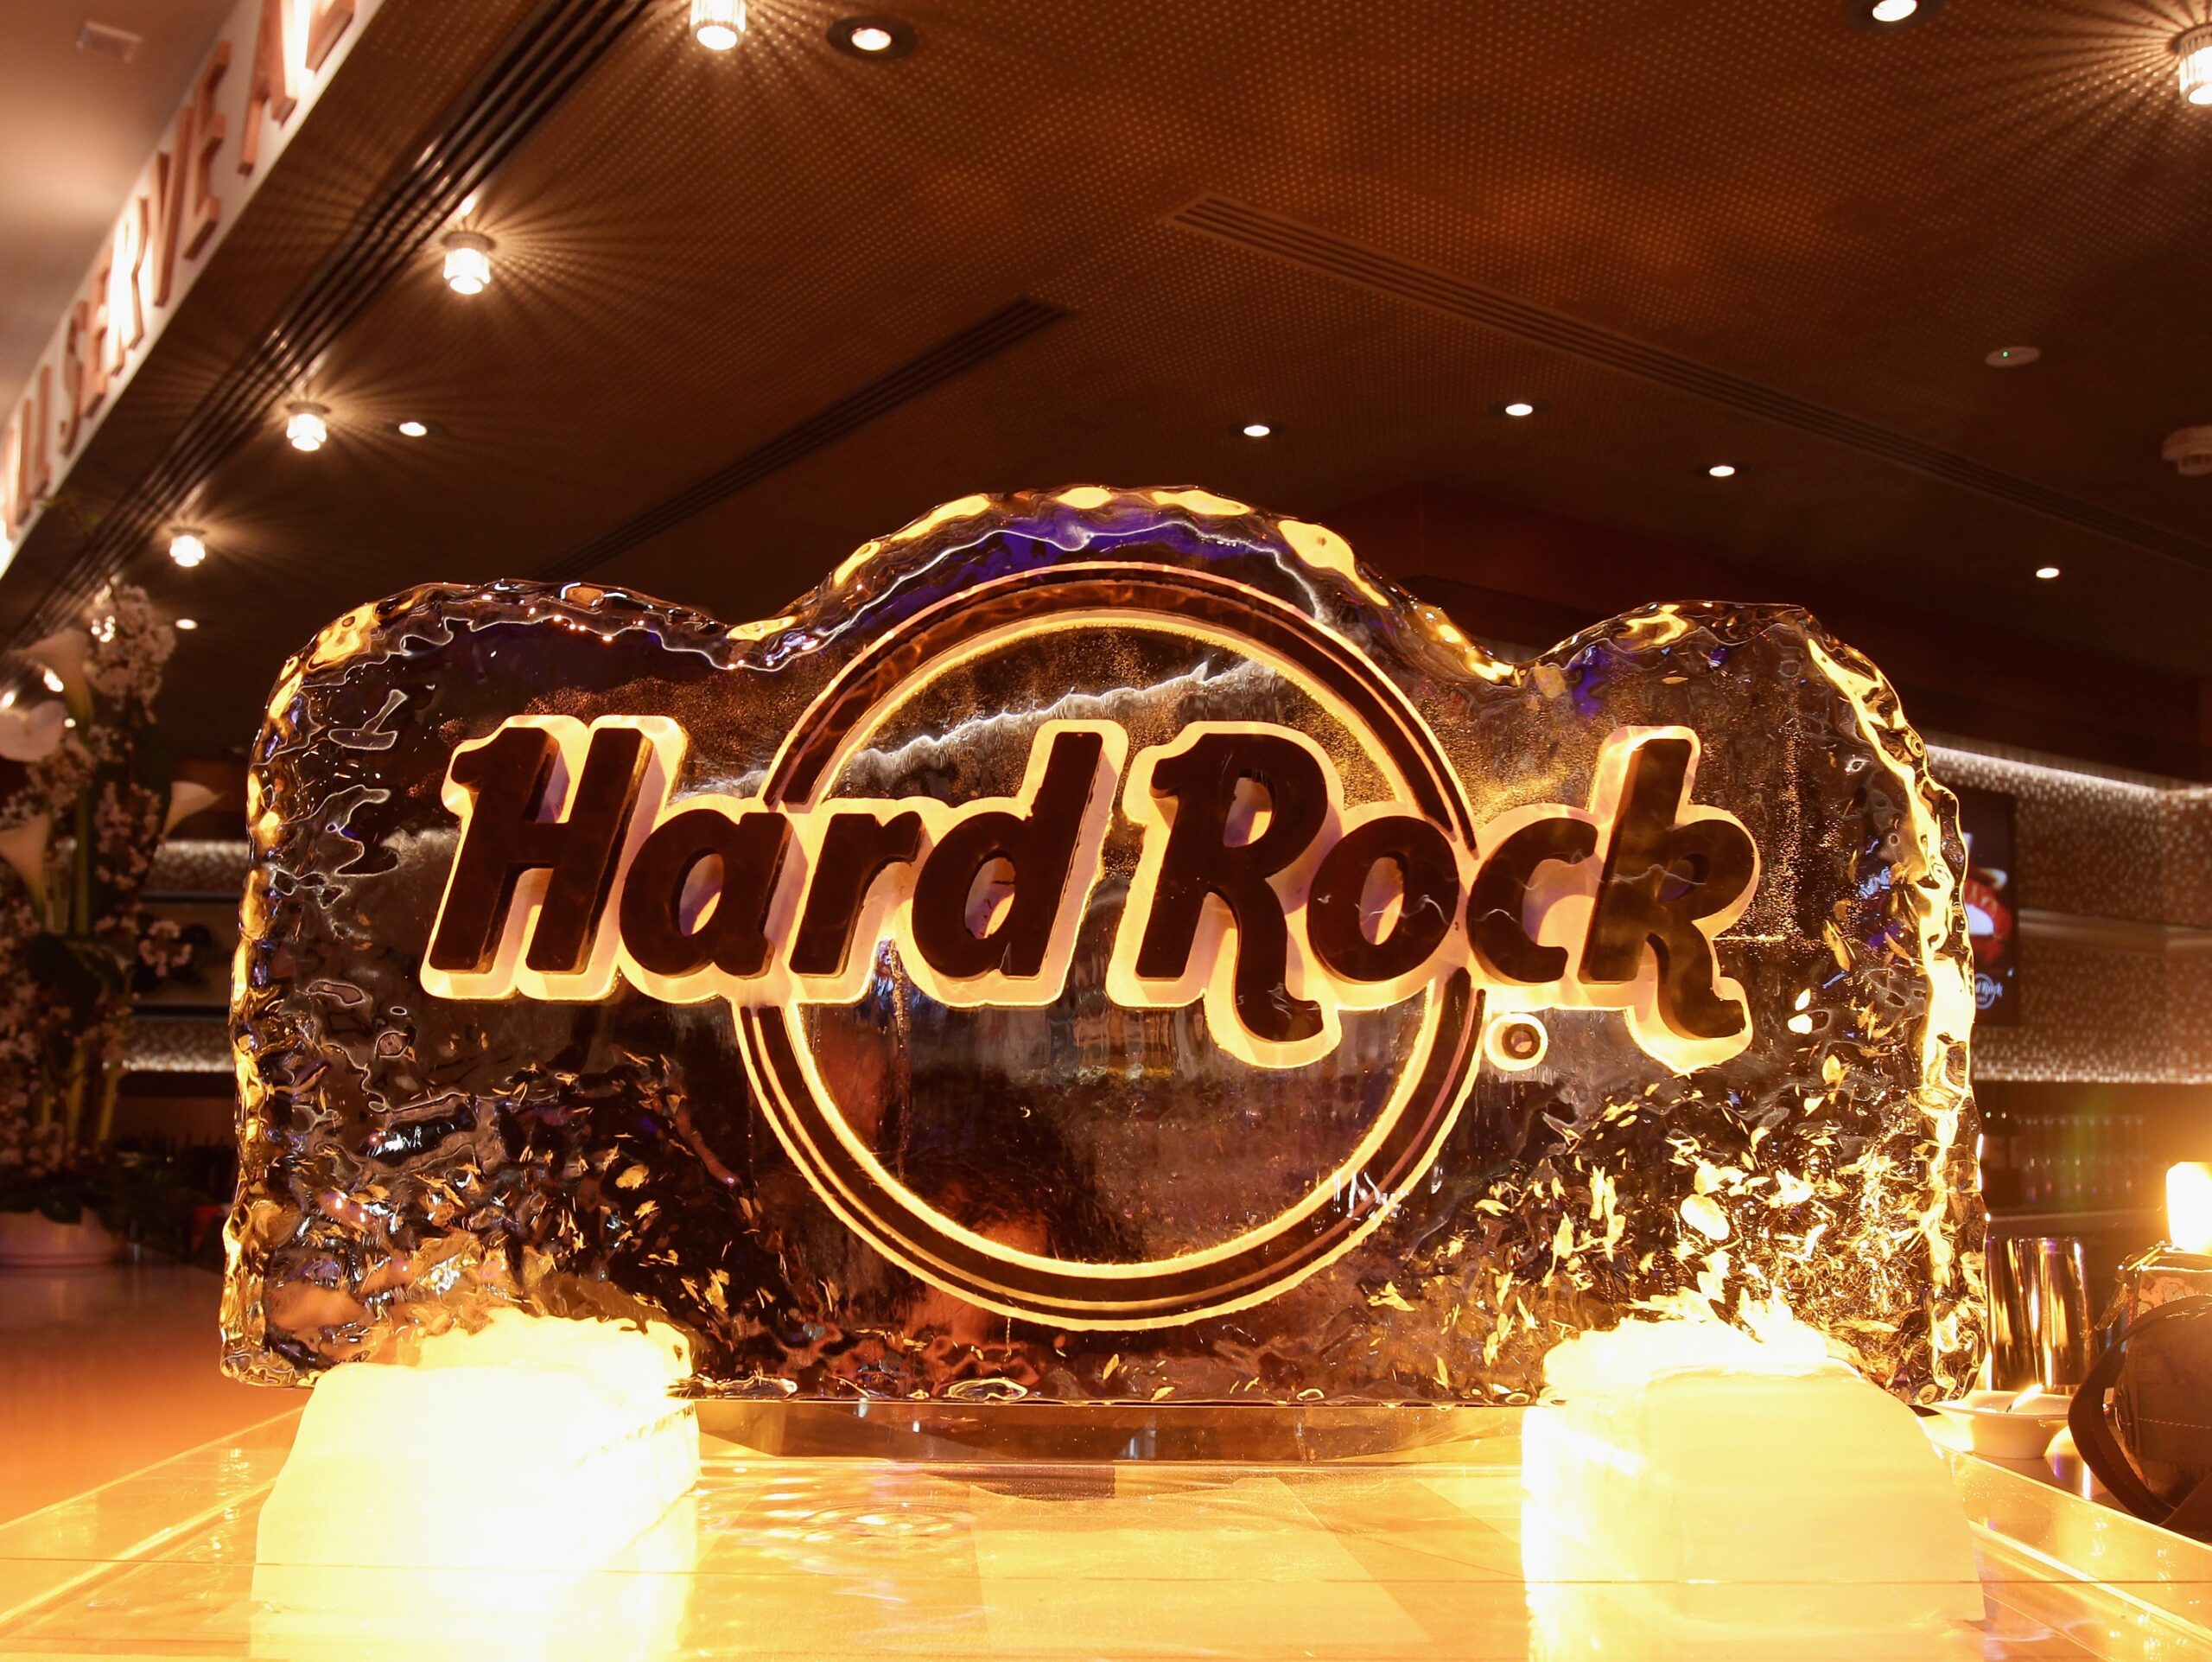 Брендом «Hard Rock International» управляет индейское племя семинолов